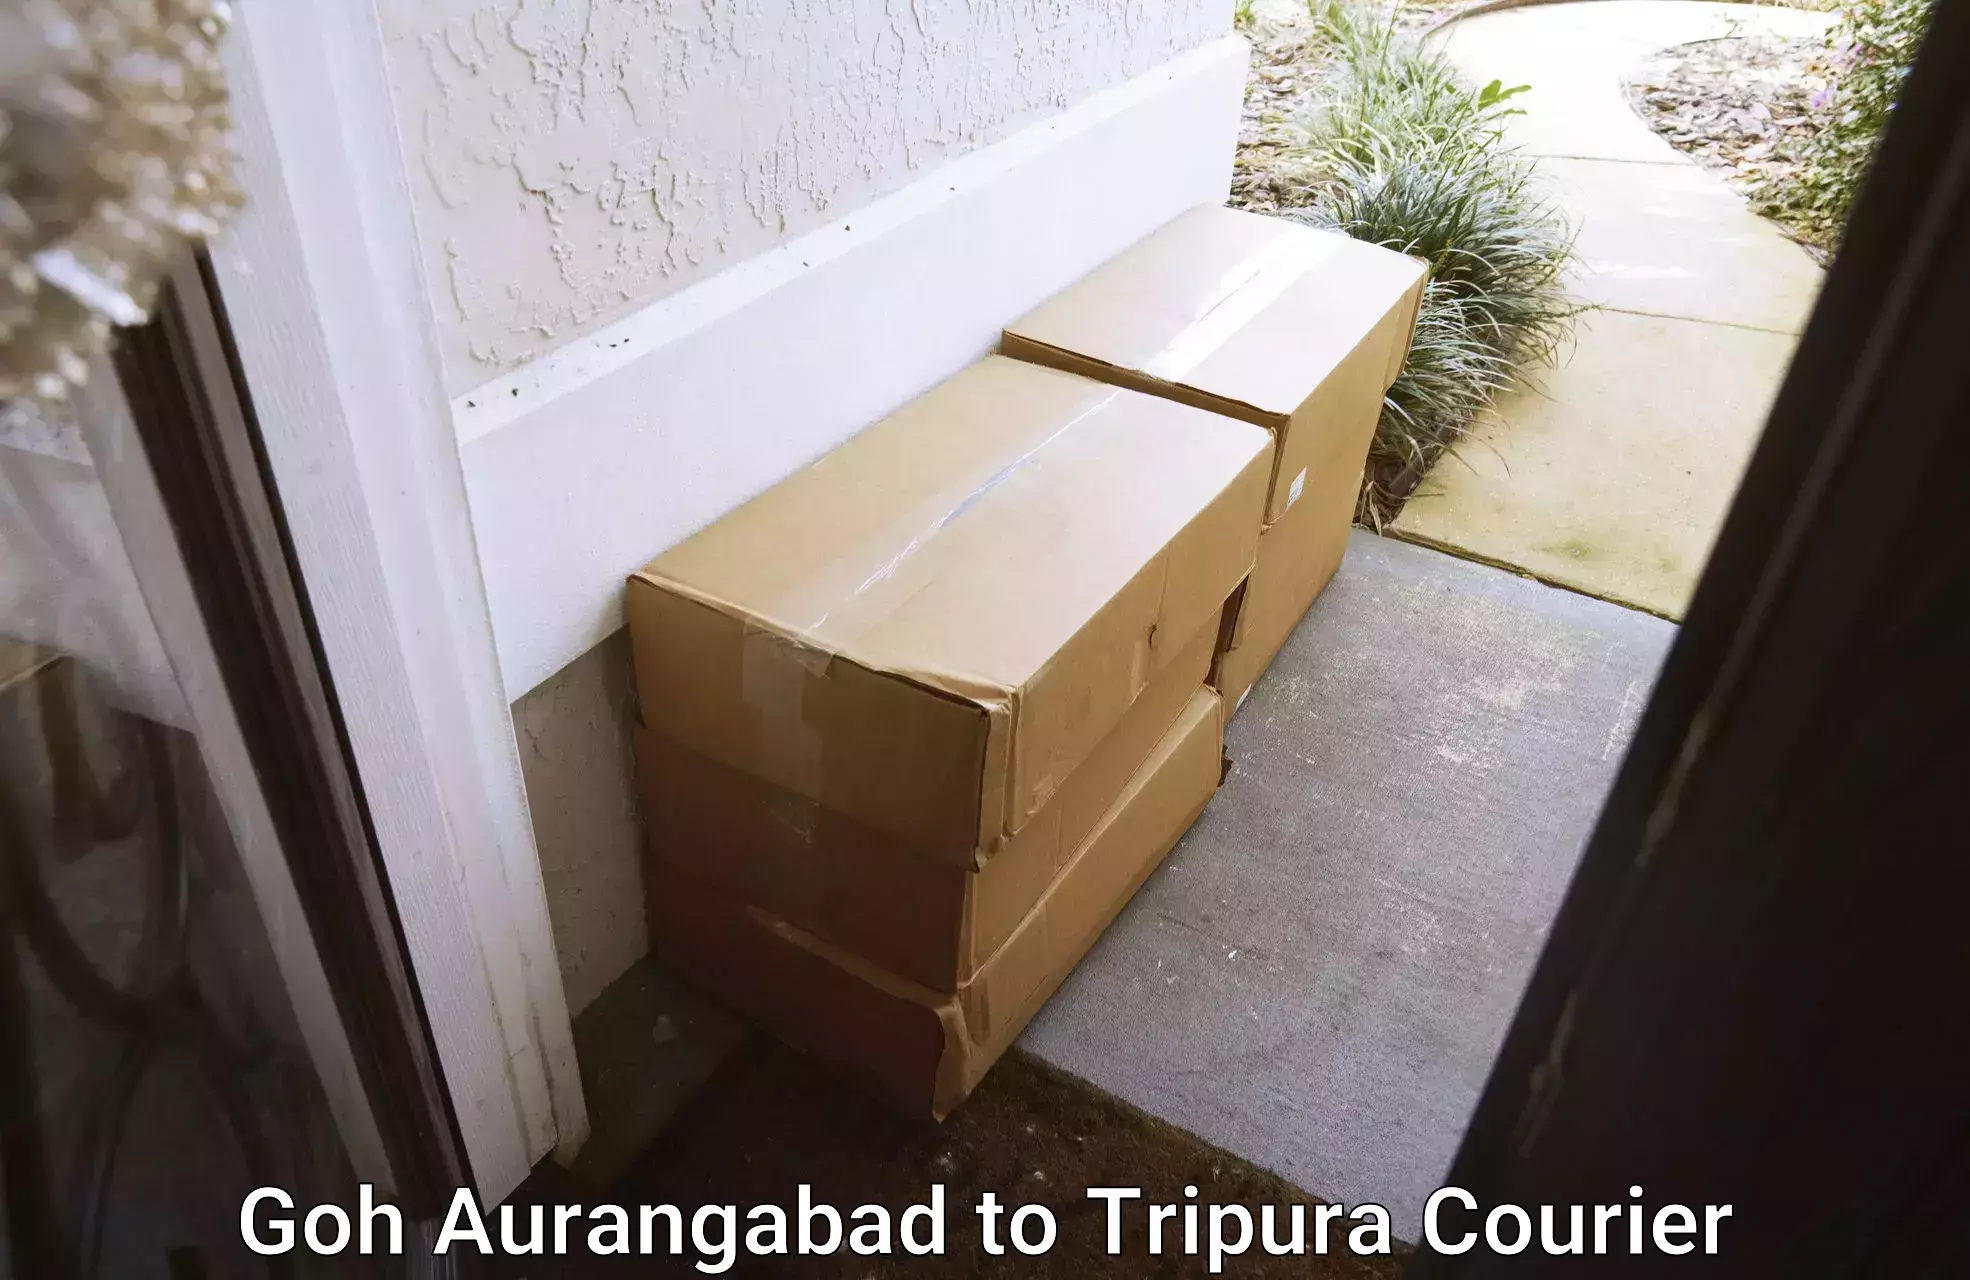 Customized moving solutions Goh Aurangabad to Udaipur Tripura